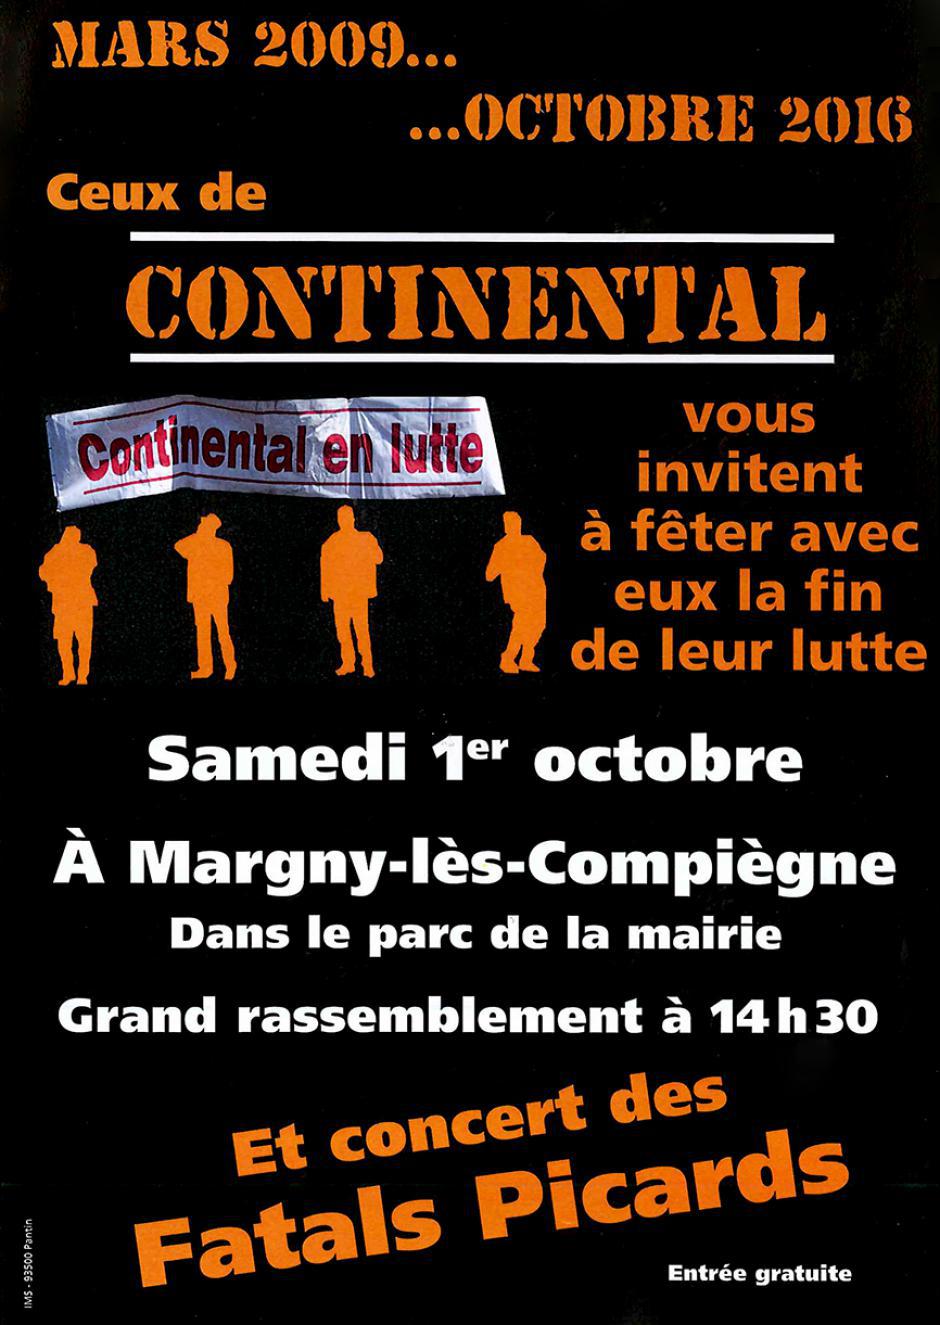 France 3 Picardie-JT 19-20-Margny-lès-Compiègne-Fête de la fin de la lutte des Conti - 1er octobre 2016